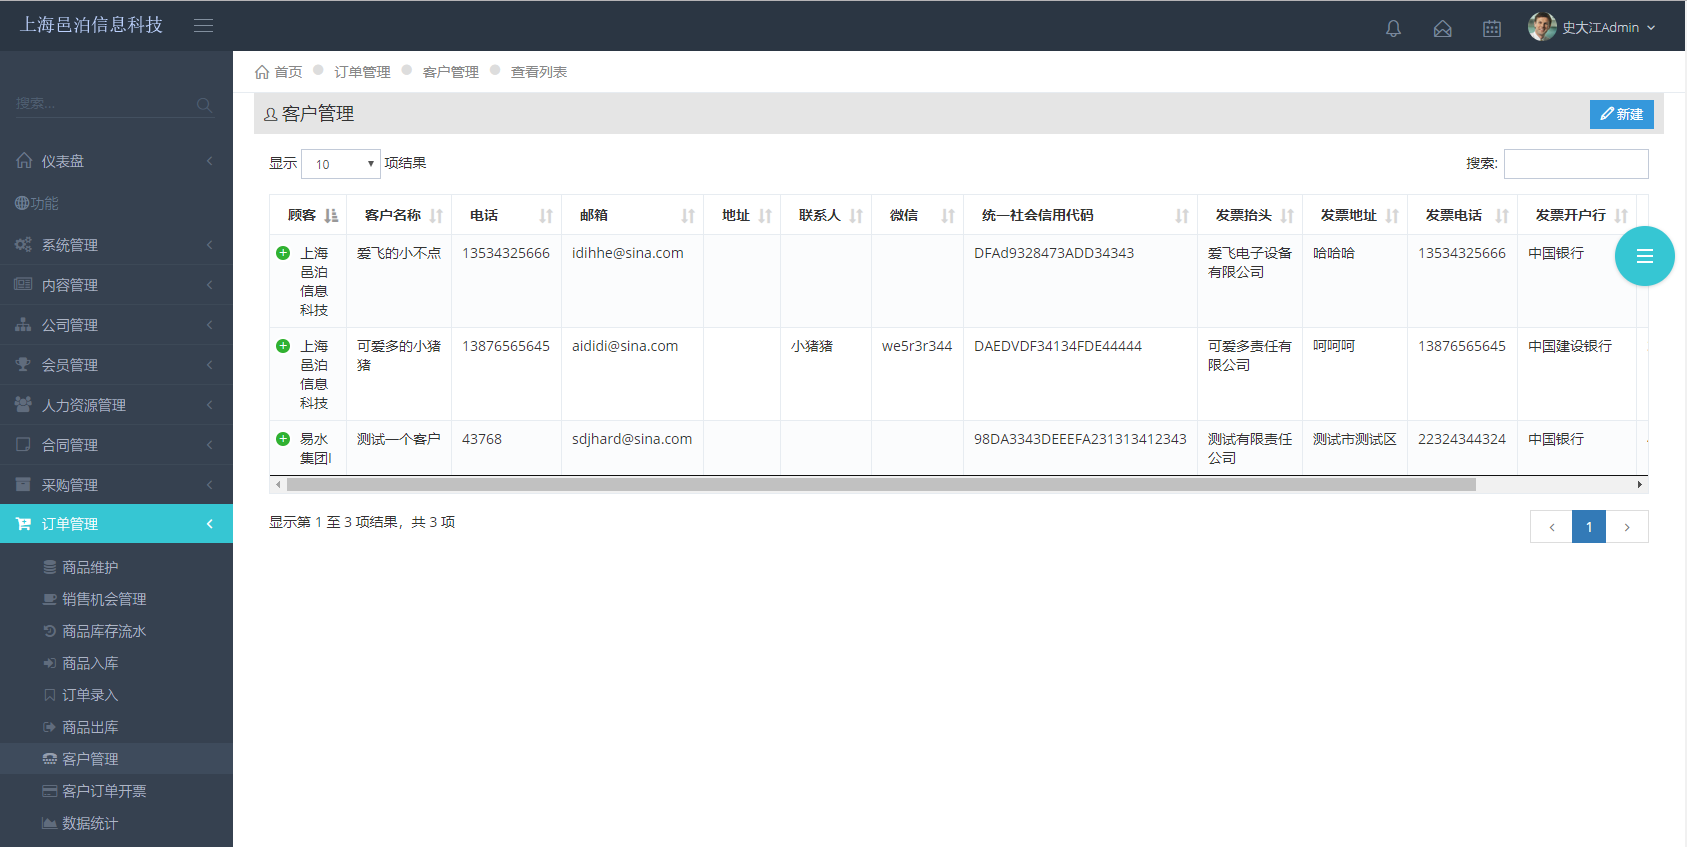 Shanghai Town Lake ERP订单管理软件拥有商品信息、进货入库、销售订单录入、销货出库、客户信息维护、发票管理、快递管理等模块功能。